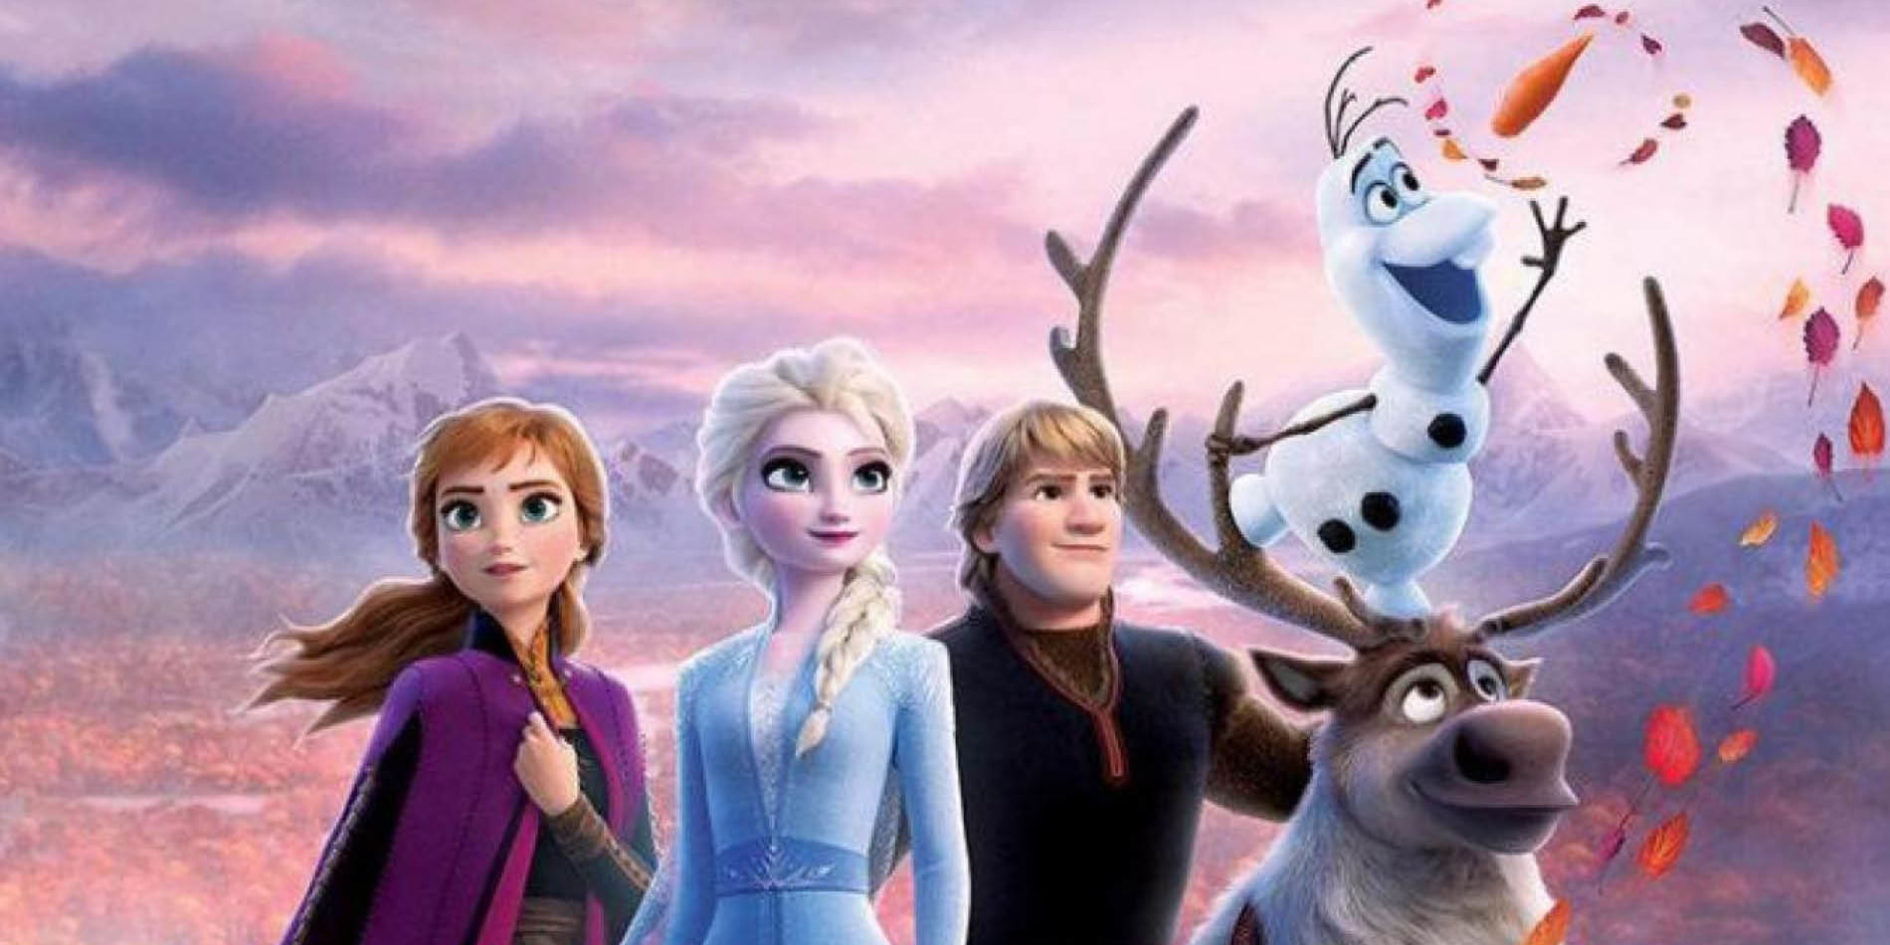 Film reine des neiges 3 : en préparation dans les studios Disney !